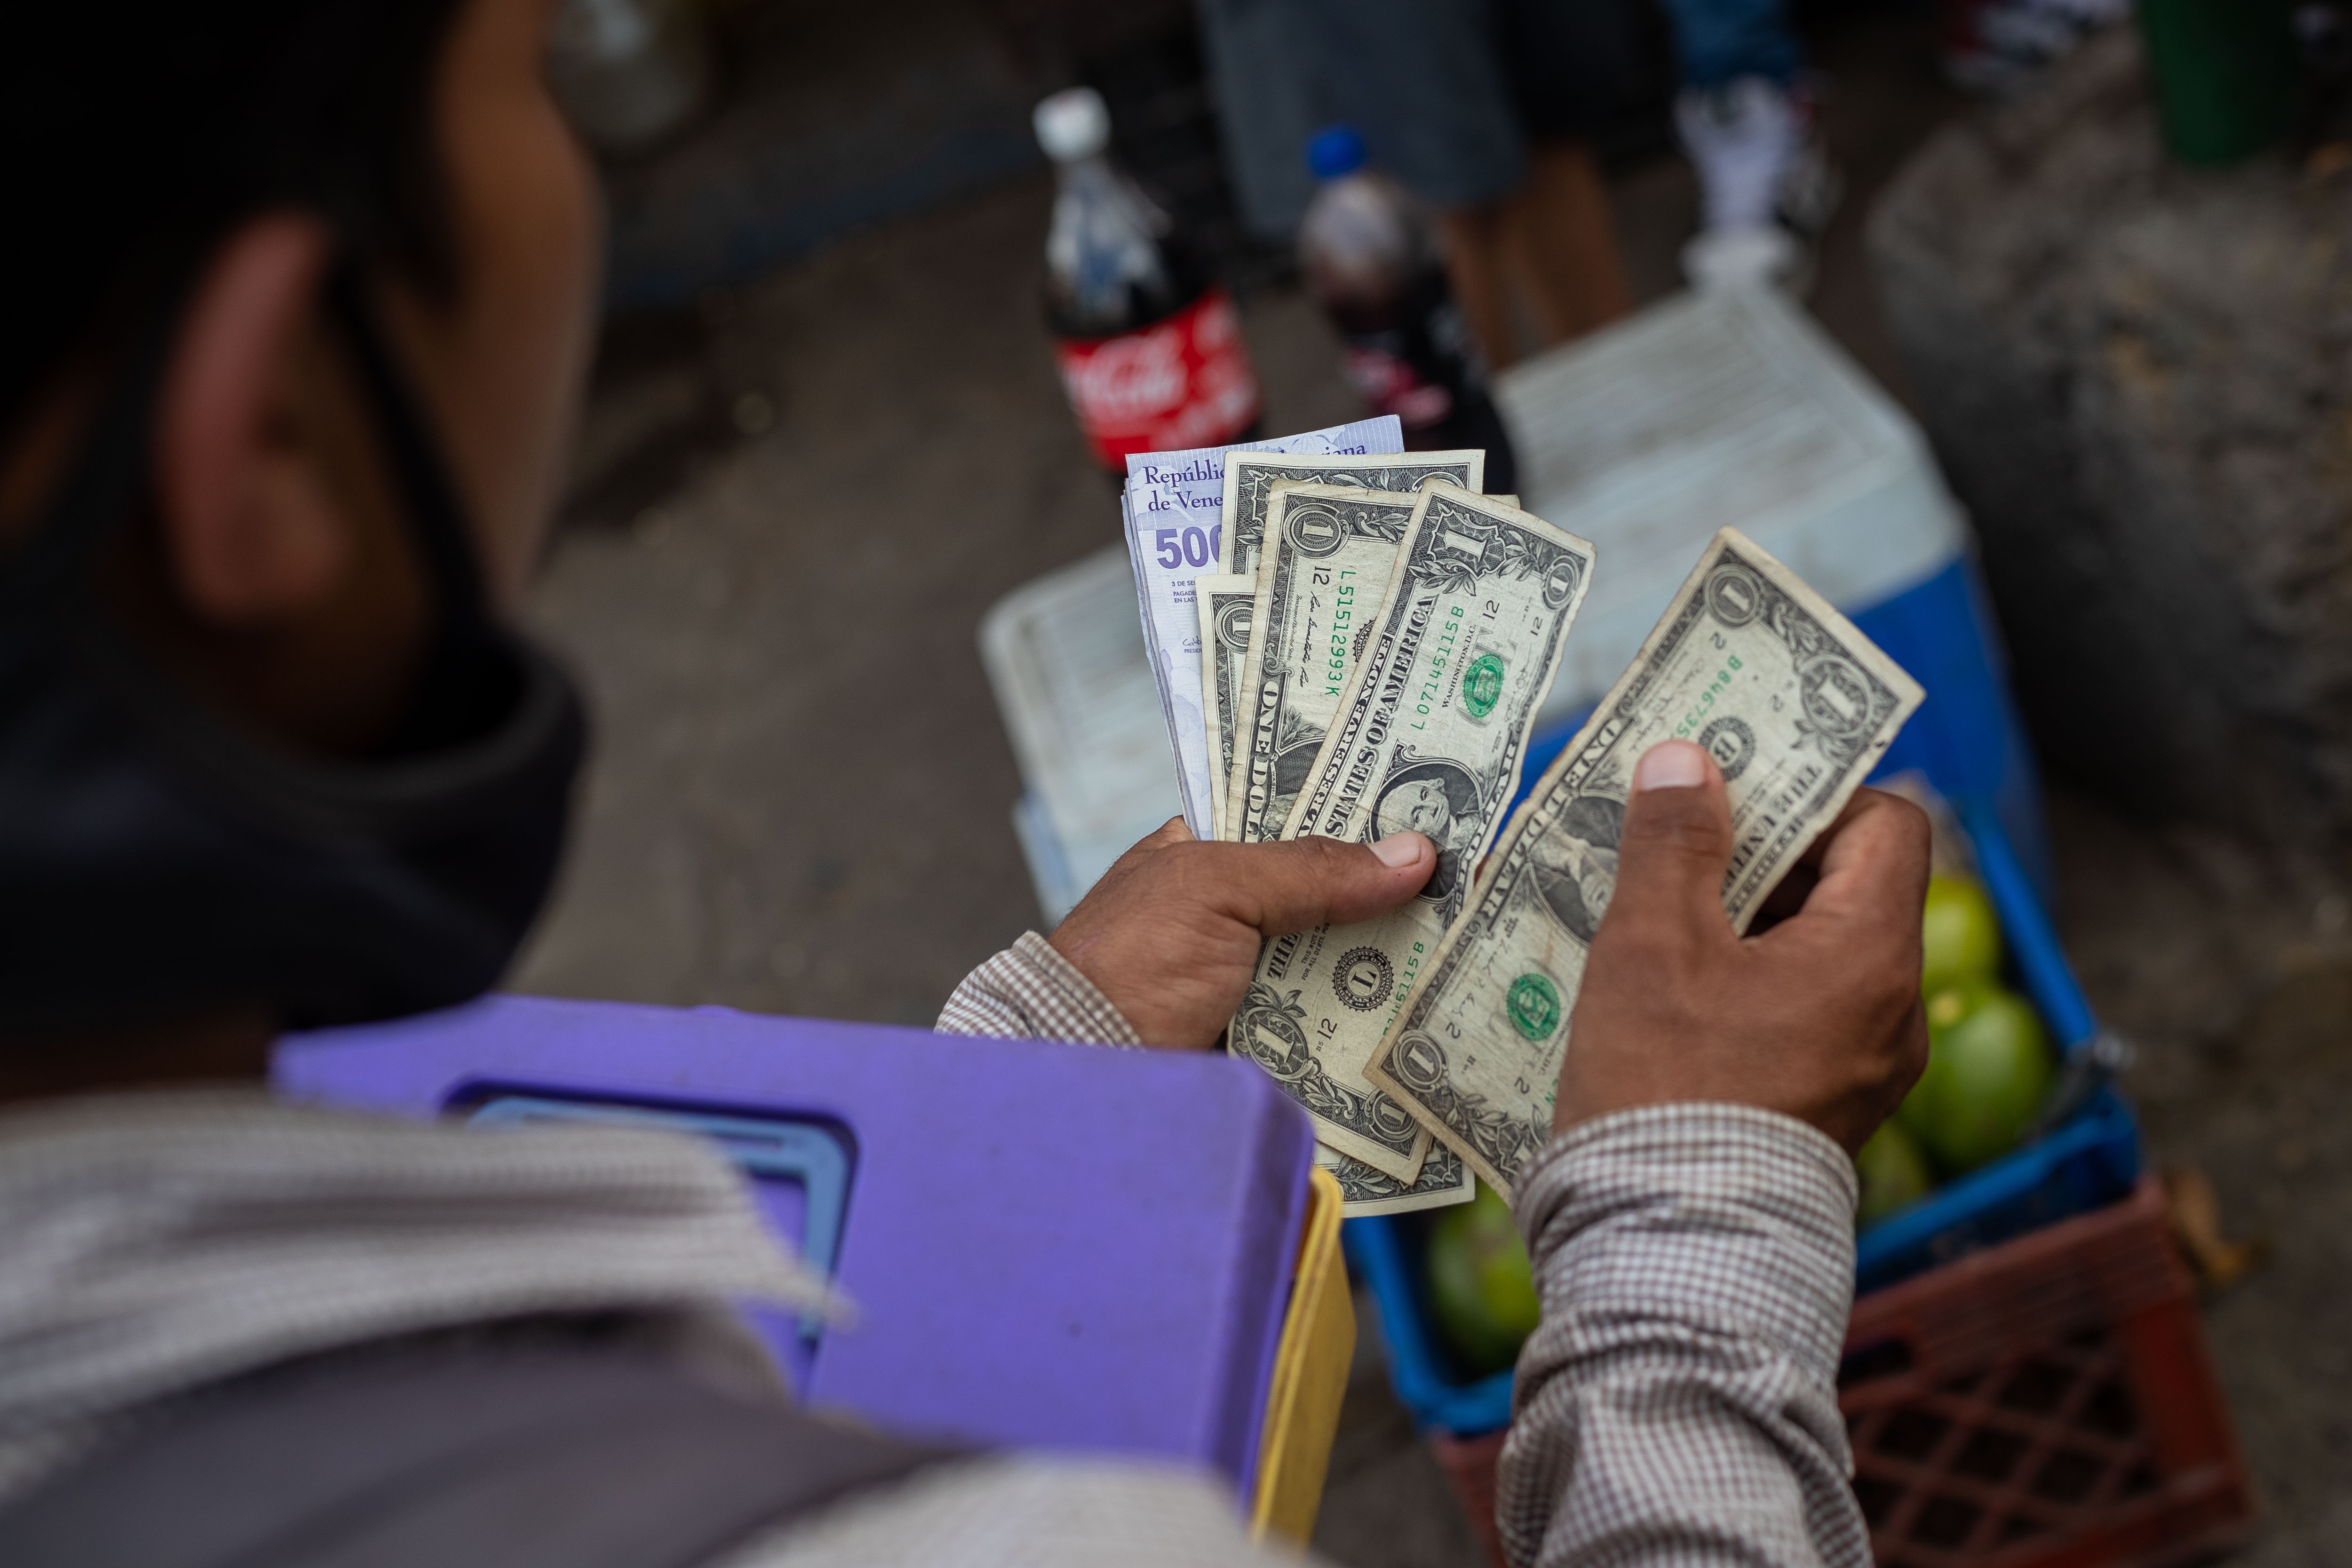 Para 2023 los venezolanos necesitarán 150 dólares para comprar lo que obtenían con 100 dólares, según economista